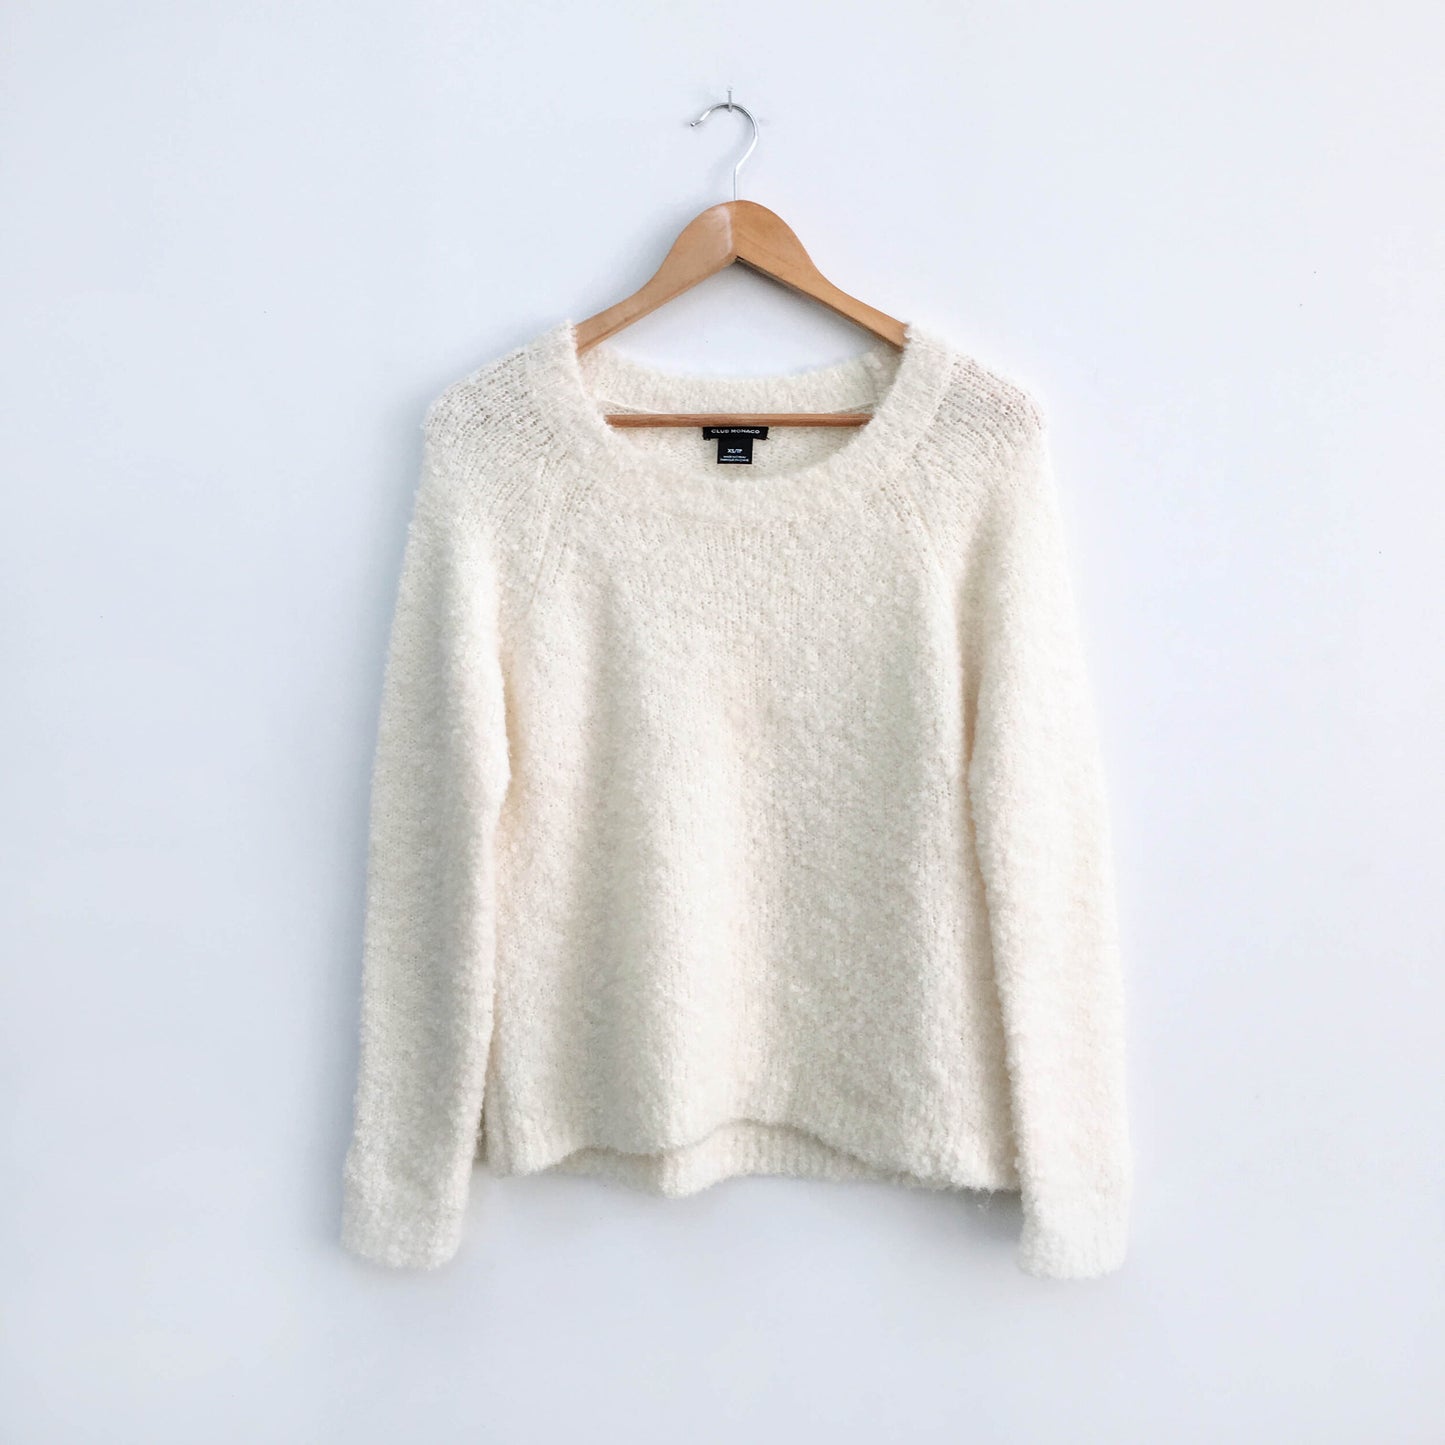 Club Monaco Wool Alpaca Sweater - size xs